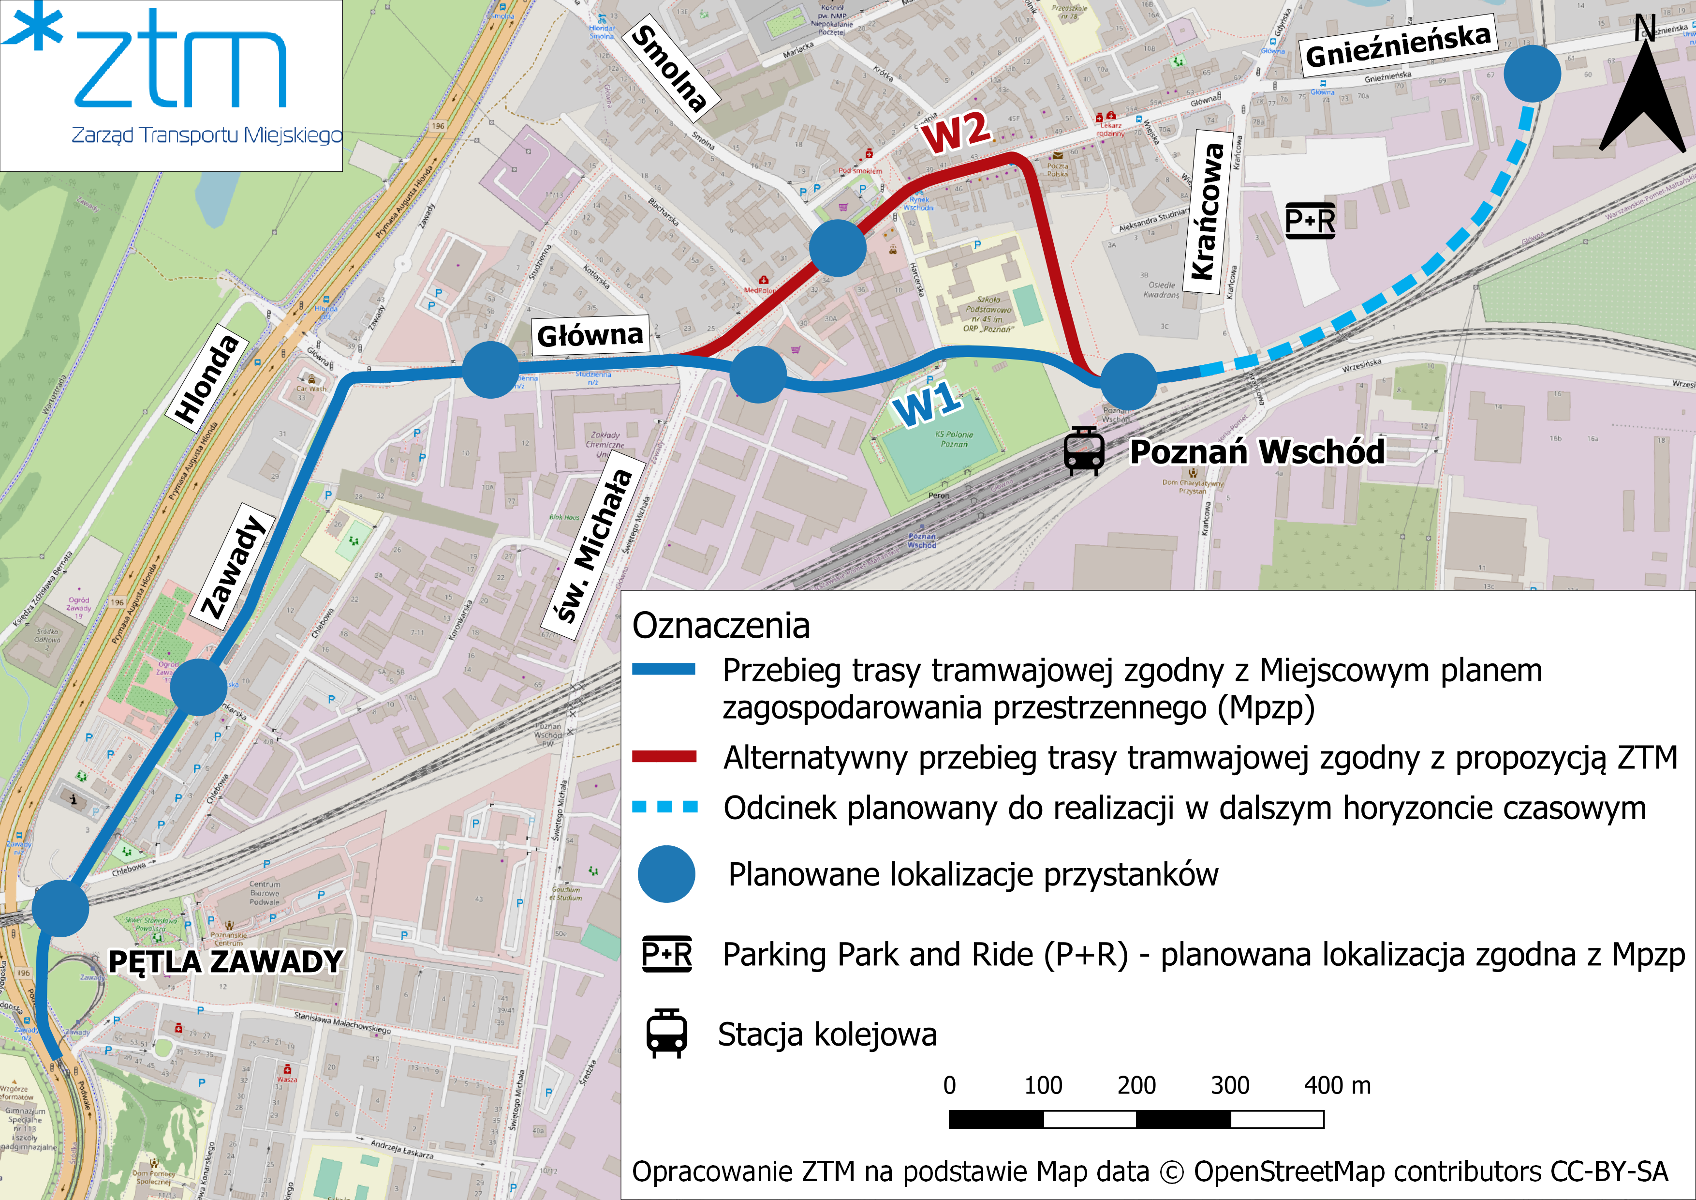 Poglądowy schemat dwóch wariantów trasy tramwajowej do stacji Poznań Wschód